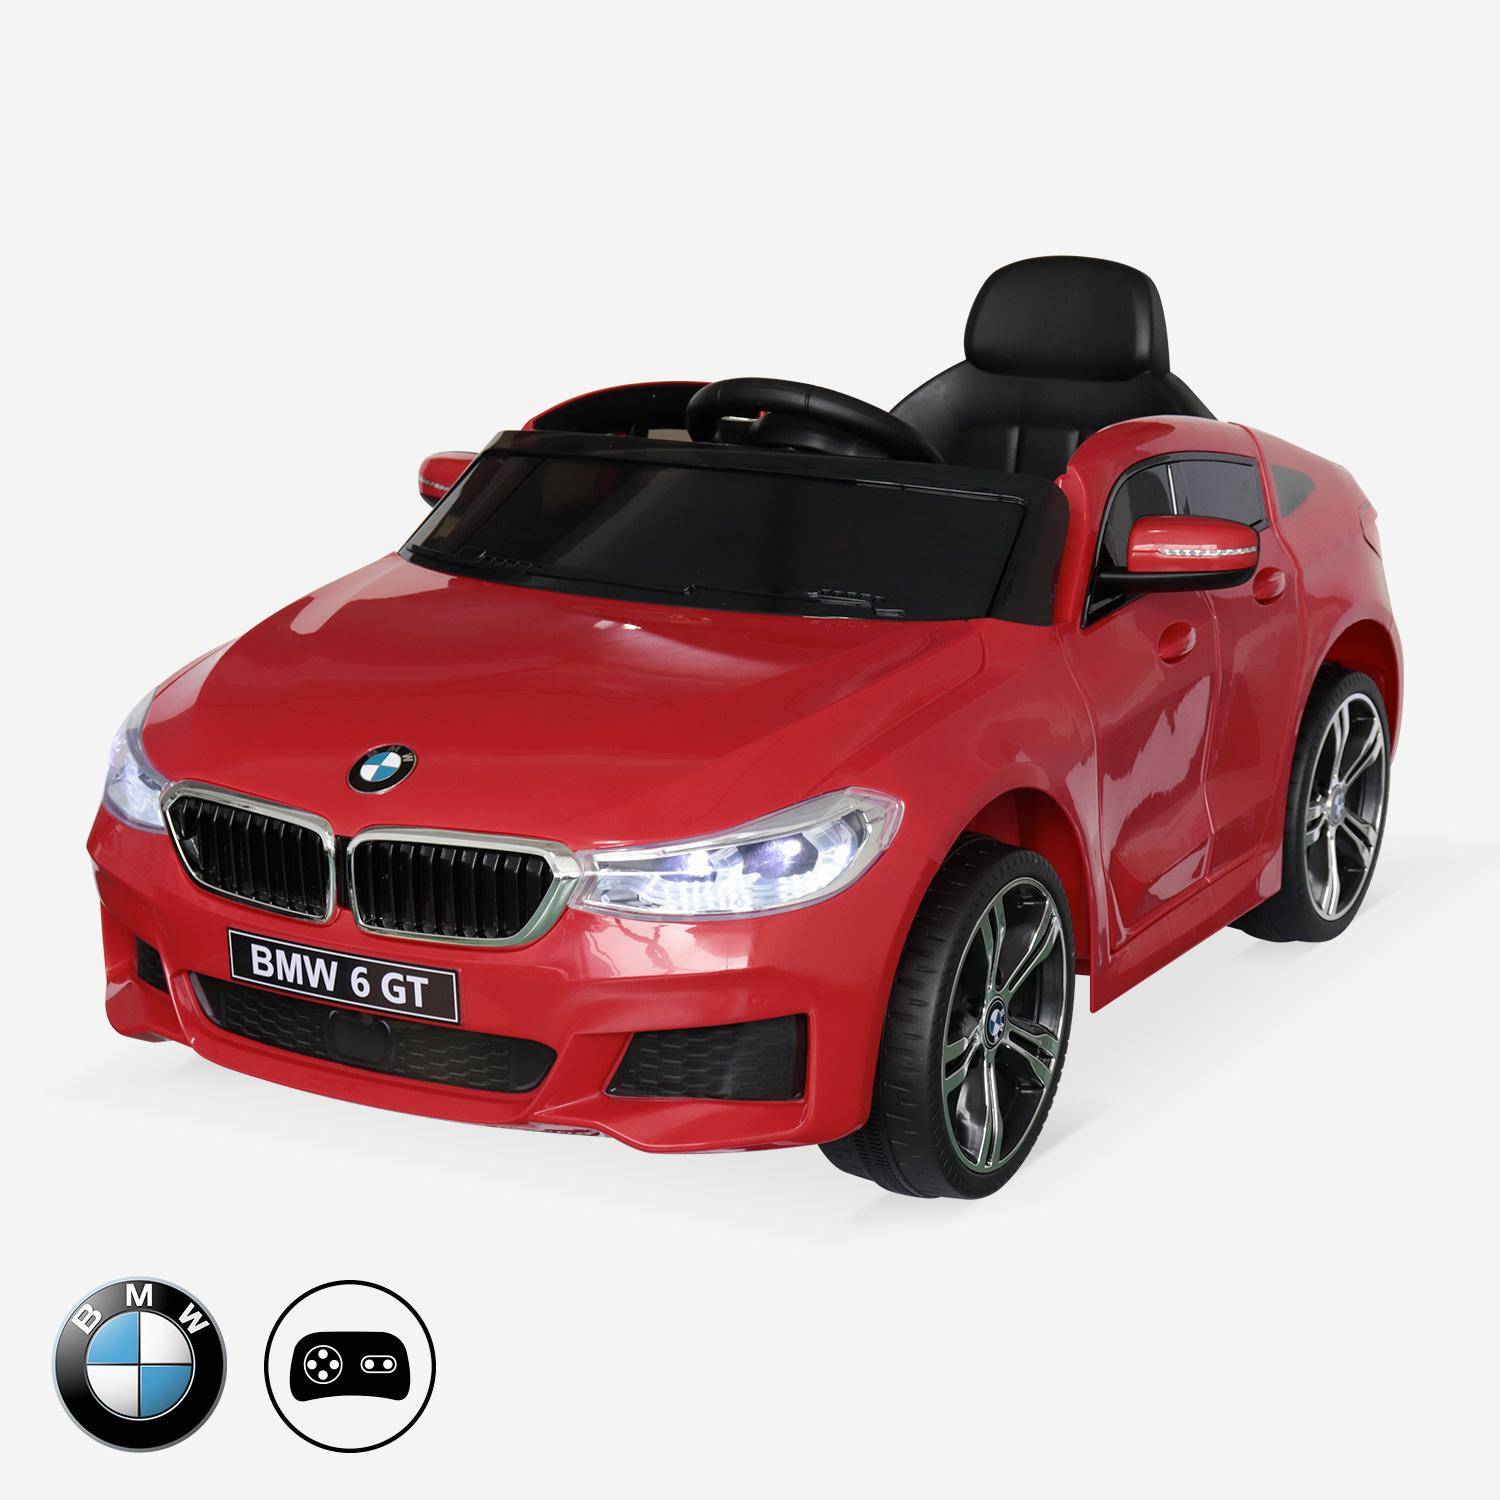 BMW Série 6 GT rouge, voiture électrique pour enfants 12V 4 Ah, 1 place, avec autoradio et télécommande Photo1